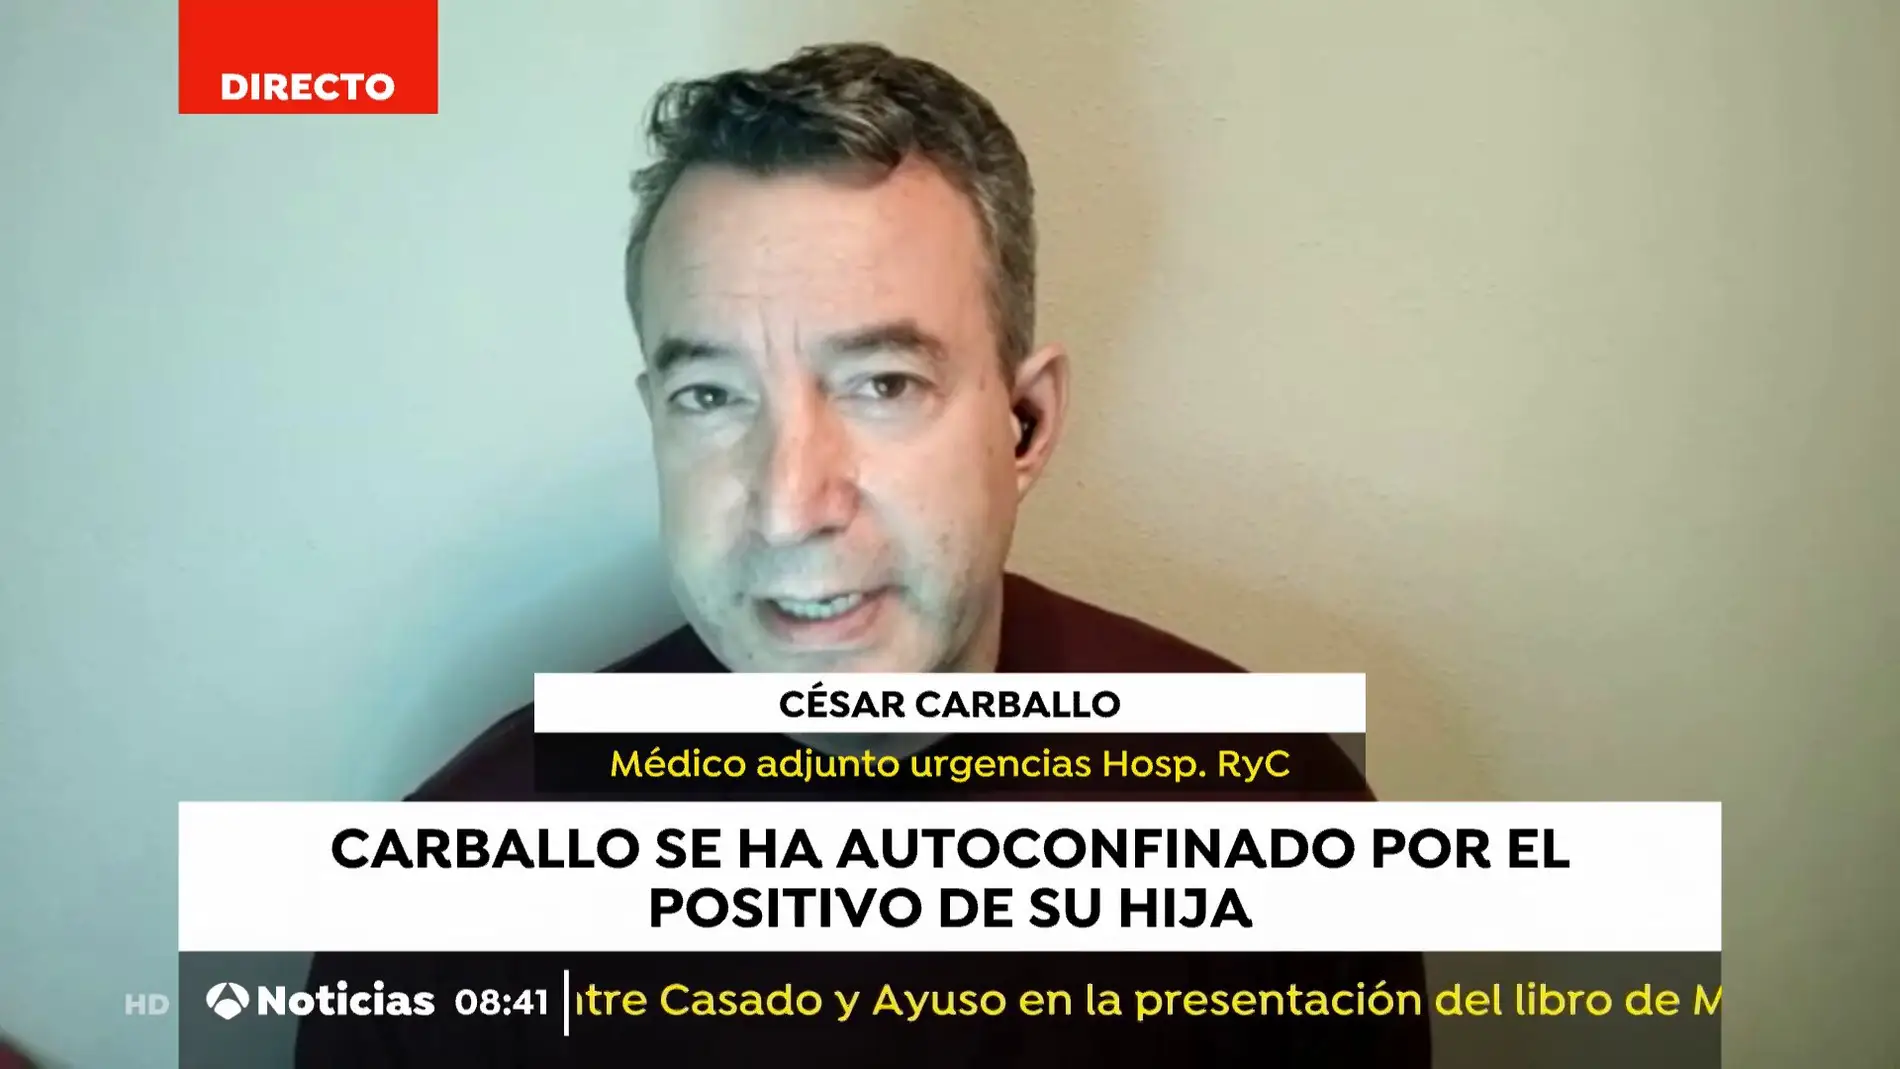 El doctor César Carballo se autoconfina en casa tras el positivo en coronavirus de su hija